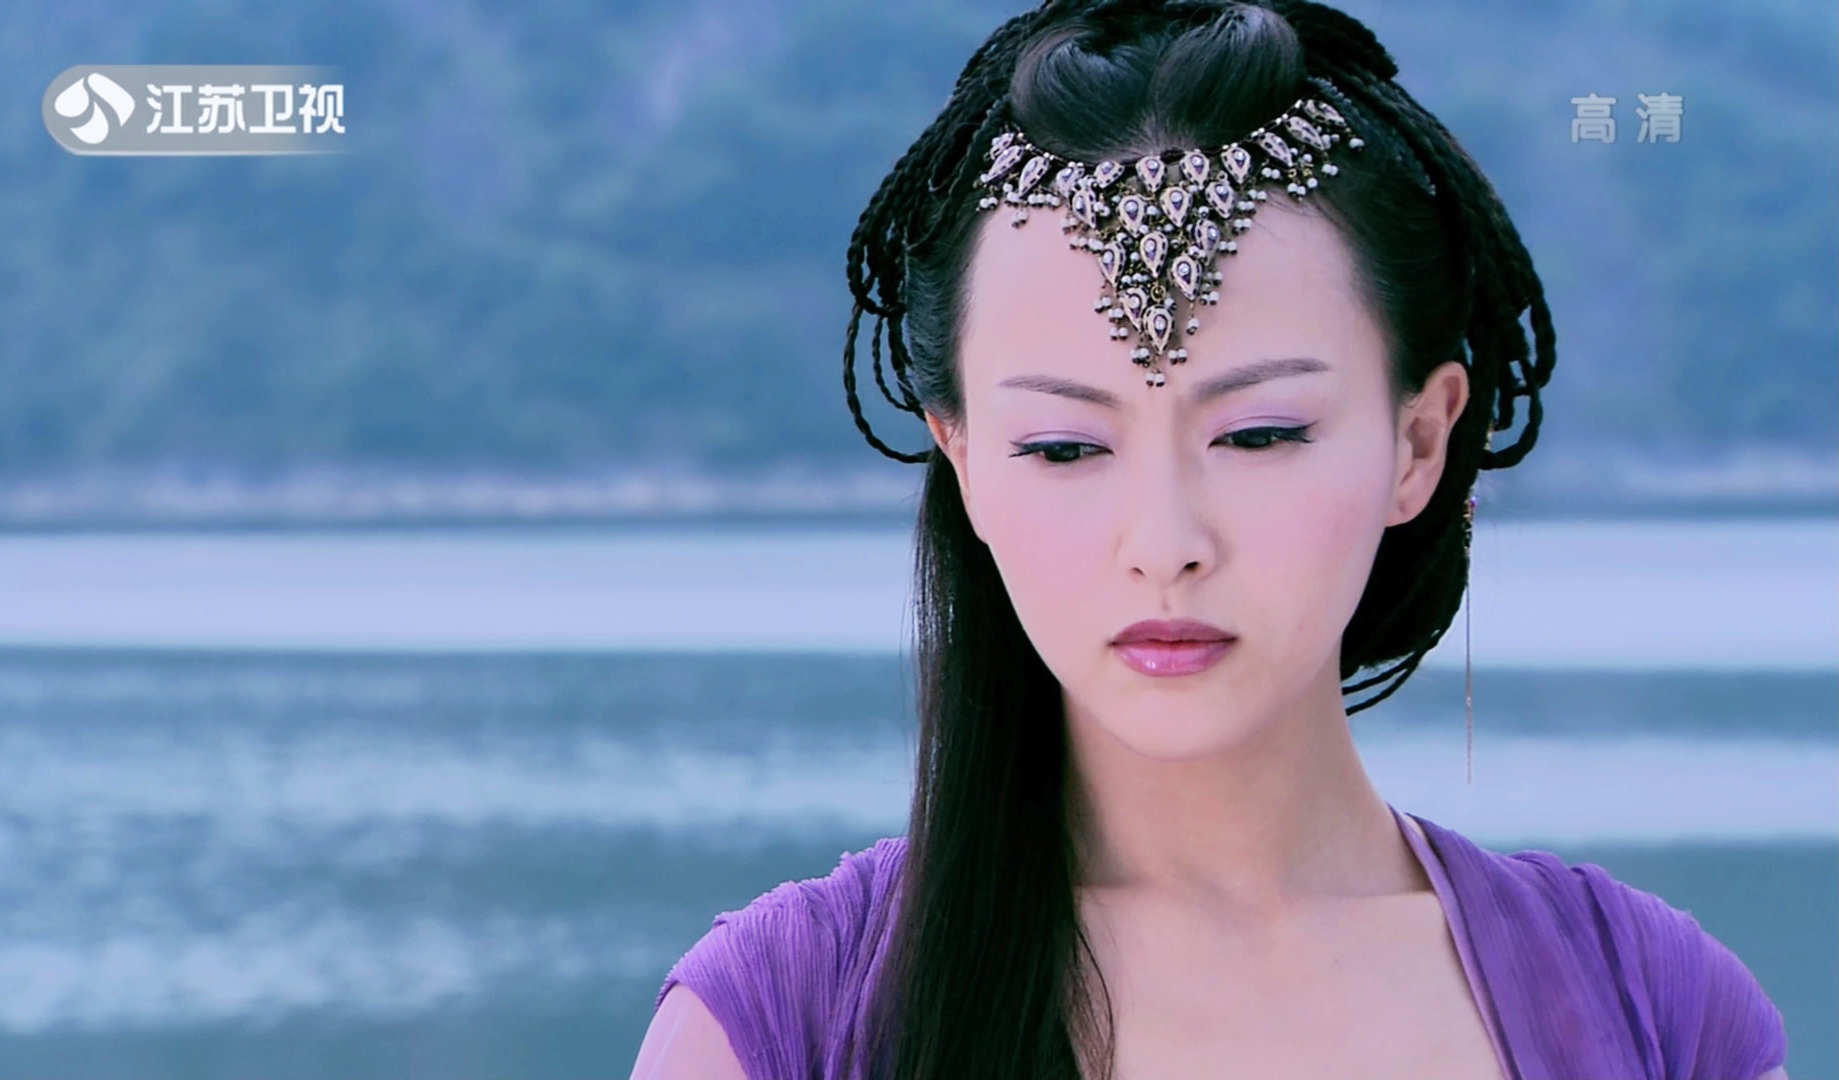 这是电影《大话西游3》里的唐嫣,扮演的可是紫霞仙子啊!